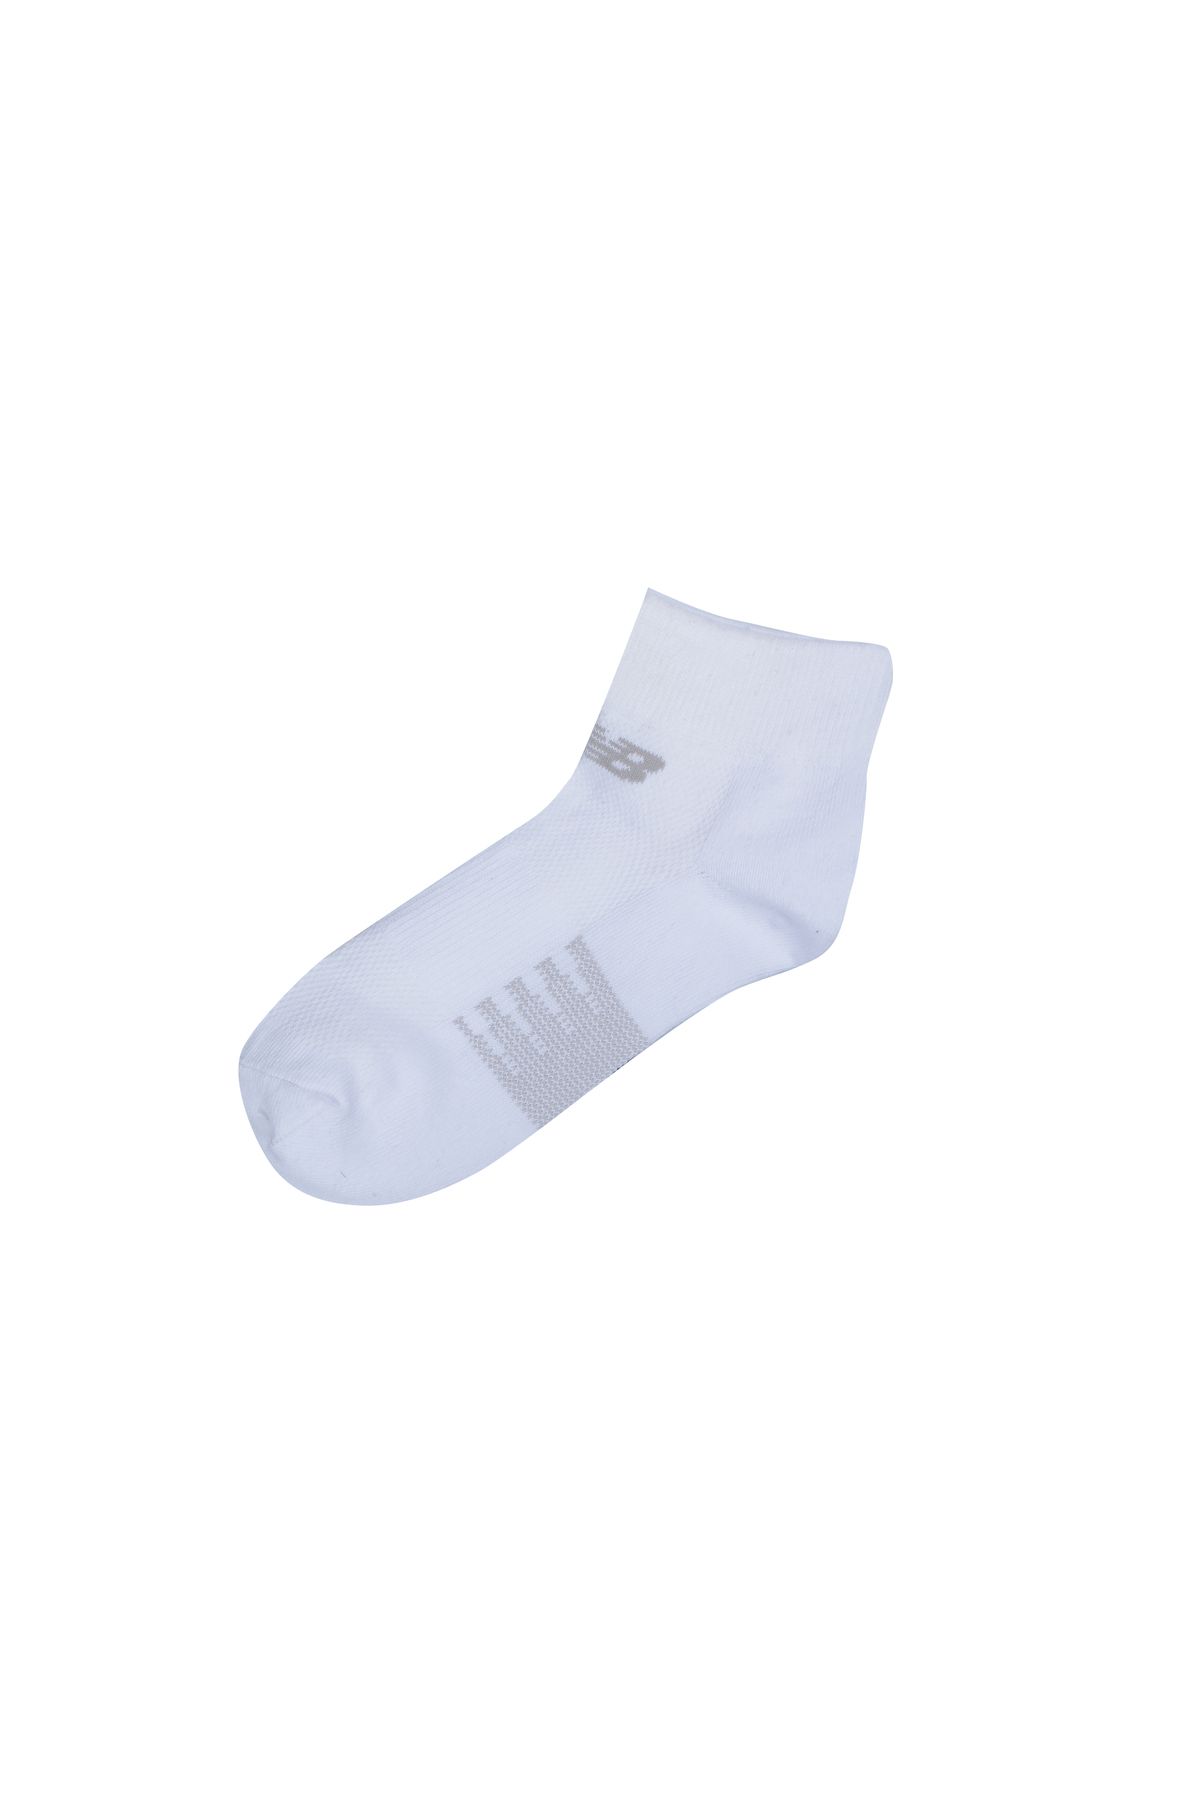 New Balance Unısex 3 Lü Çorap N624-3eu-ast